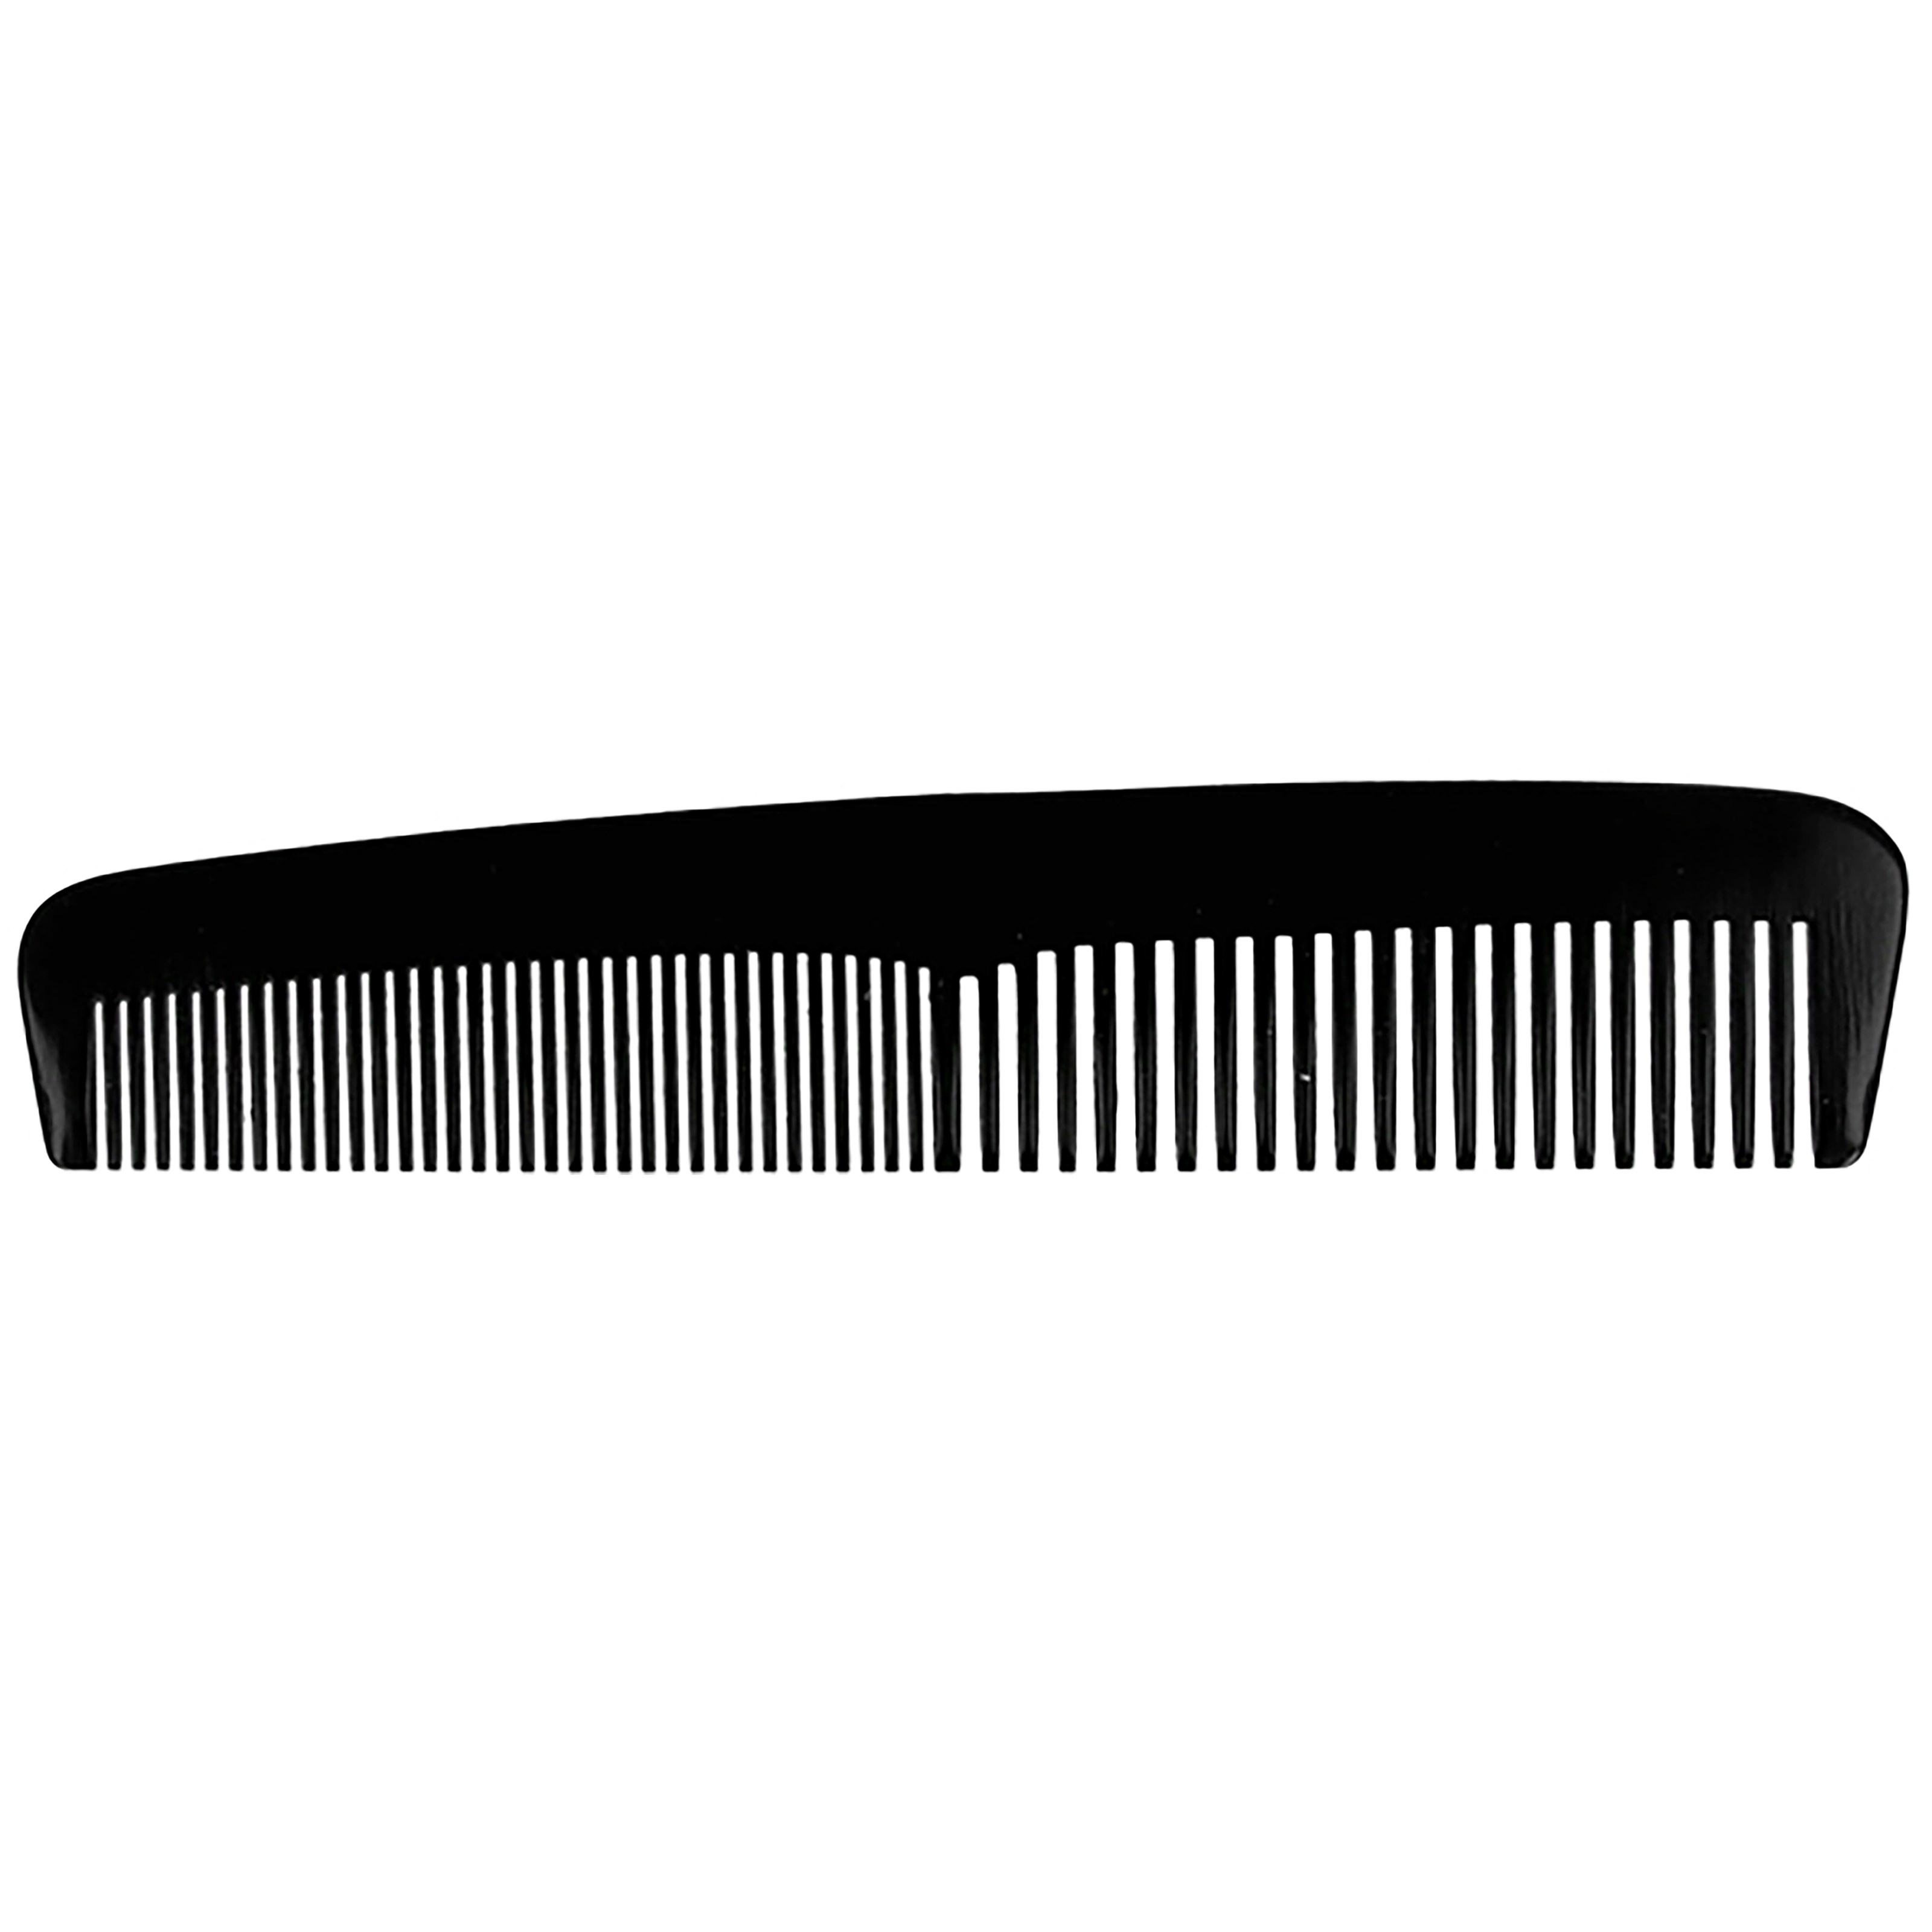 Zdjęcia - Szczotka do włosów Parsa Beauty Men Handmade Hairstyling Comb - grzebień do stylizac 